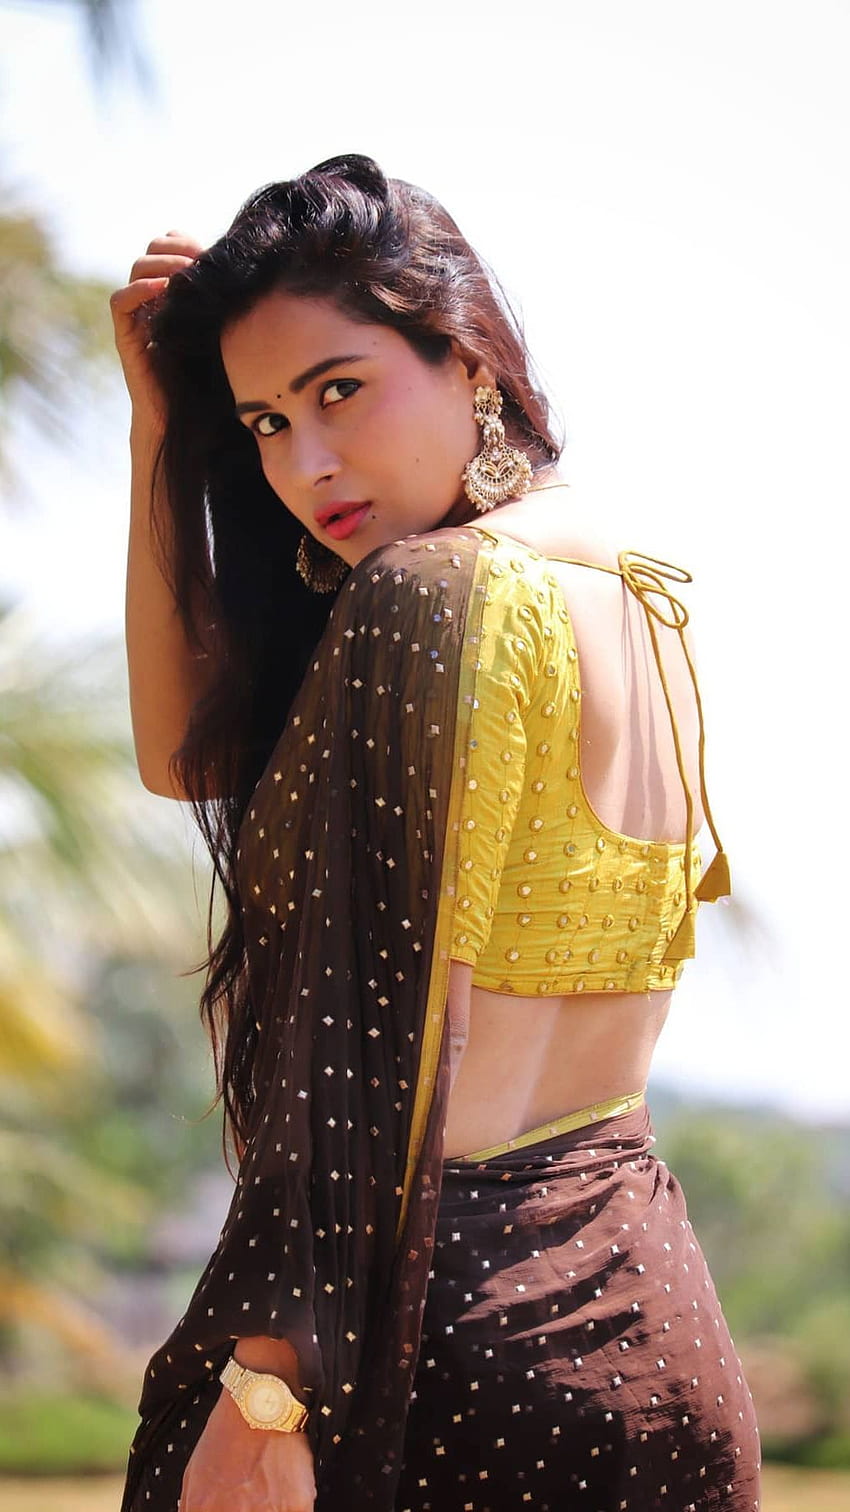 Kanchan bamne , actrice telugu, amoureuse du sari Fond d'écran de téléphone HD